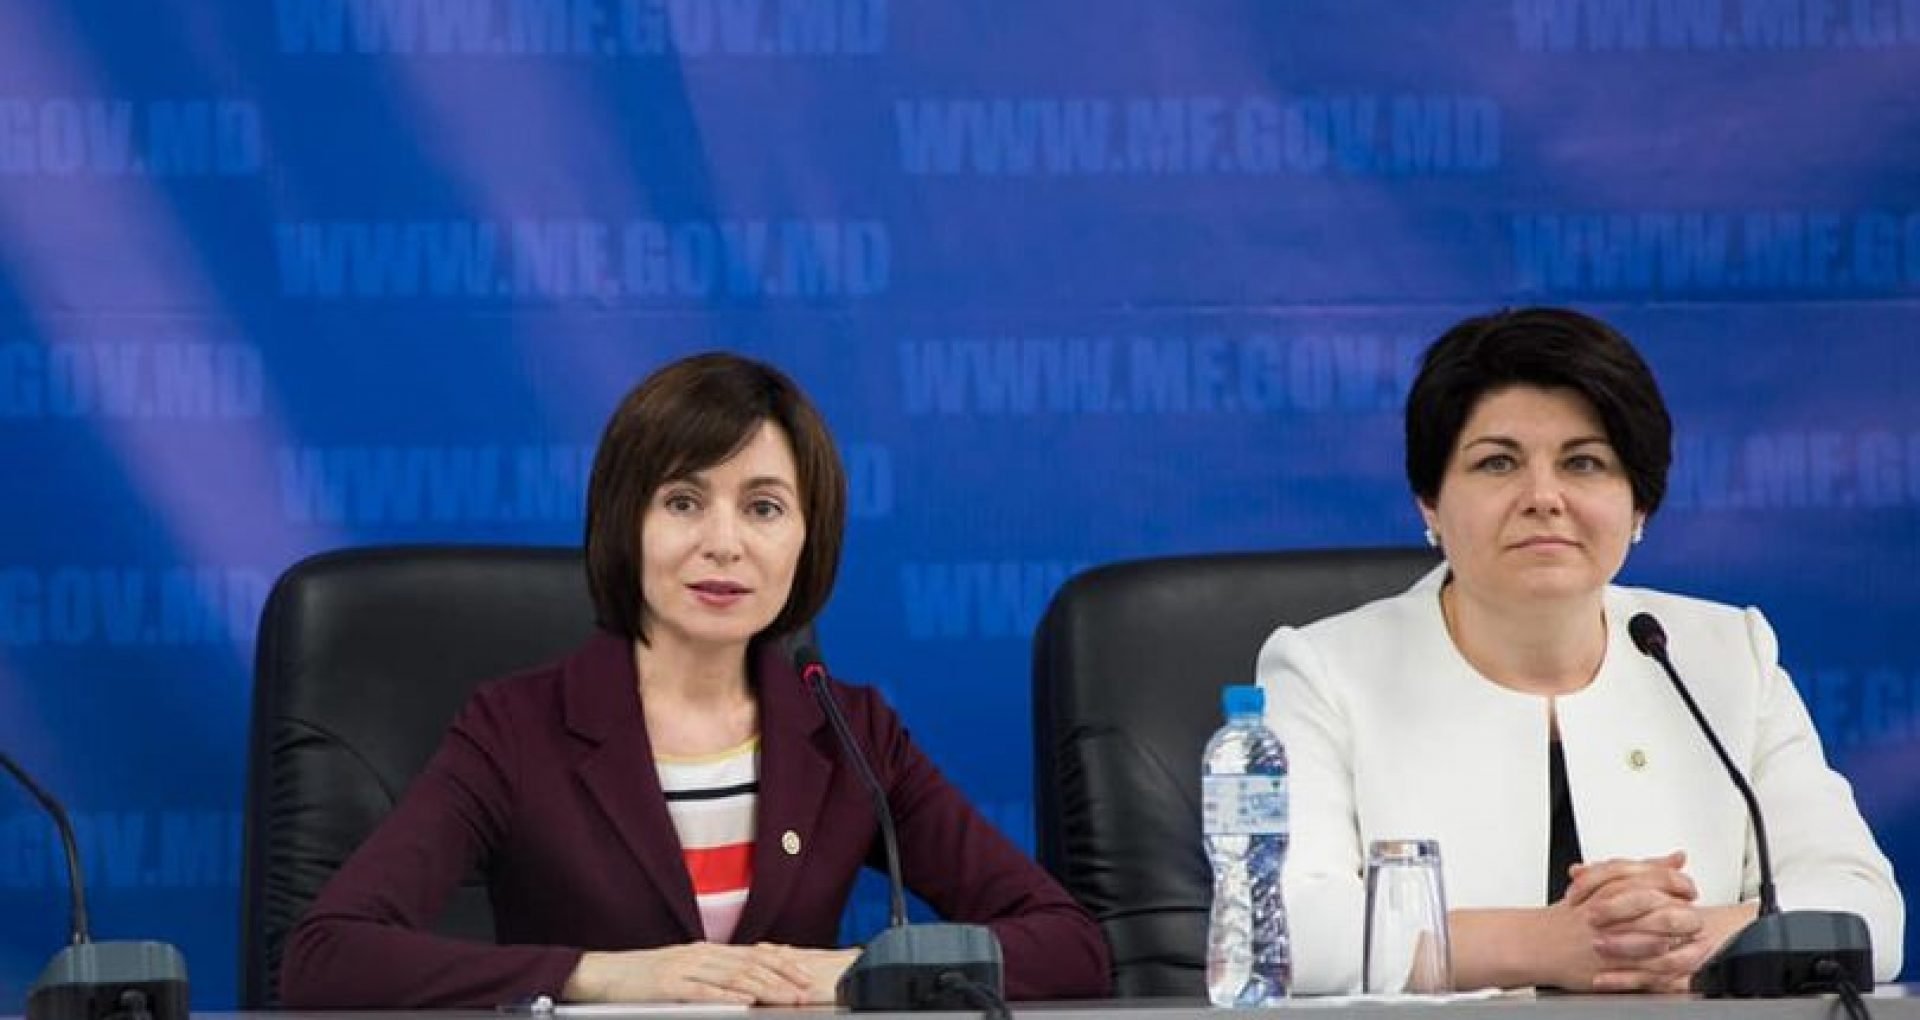  Natalia Gavriliță, desemnată premier al Moldovei de către Maia Sandu